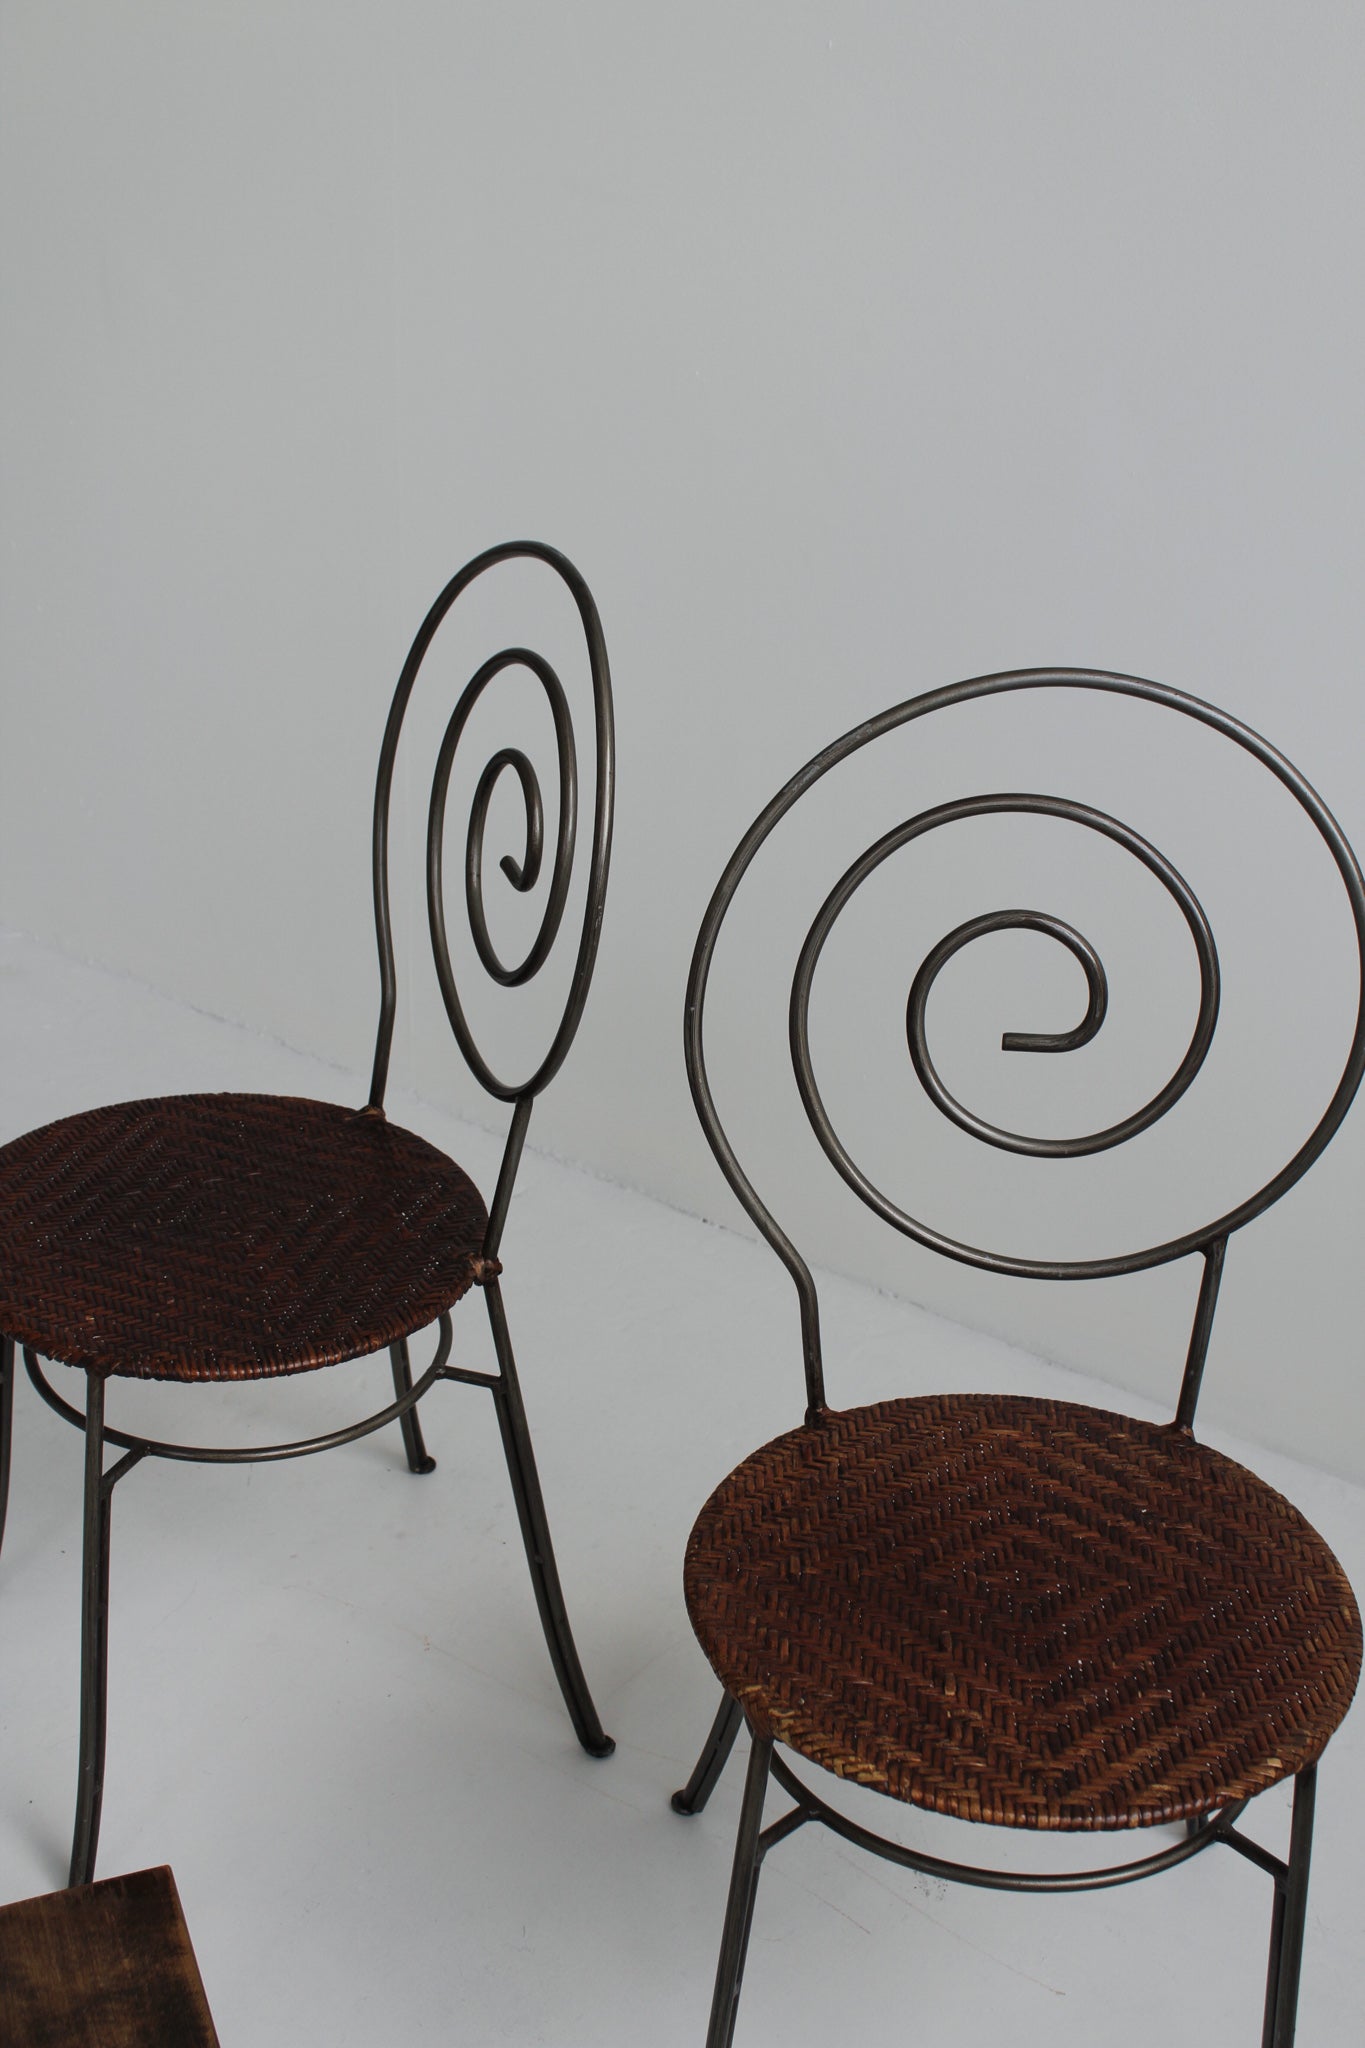 Sculptural Spiral Chairs